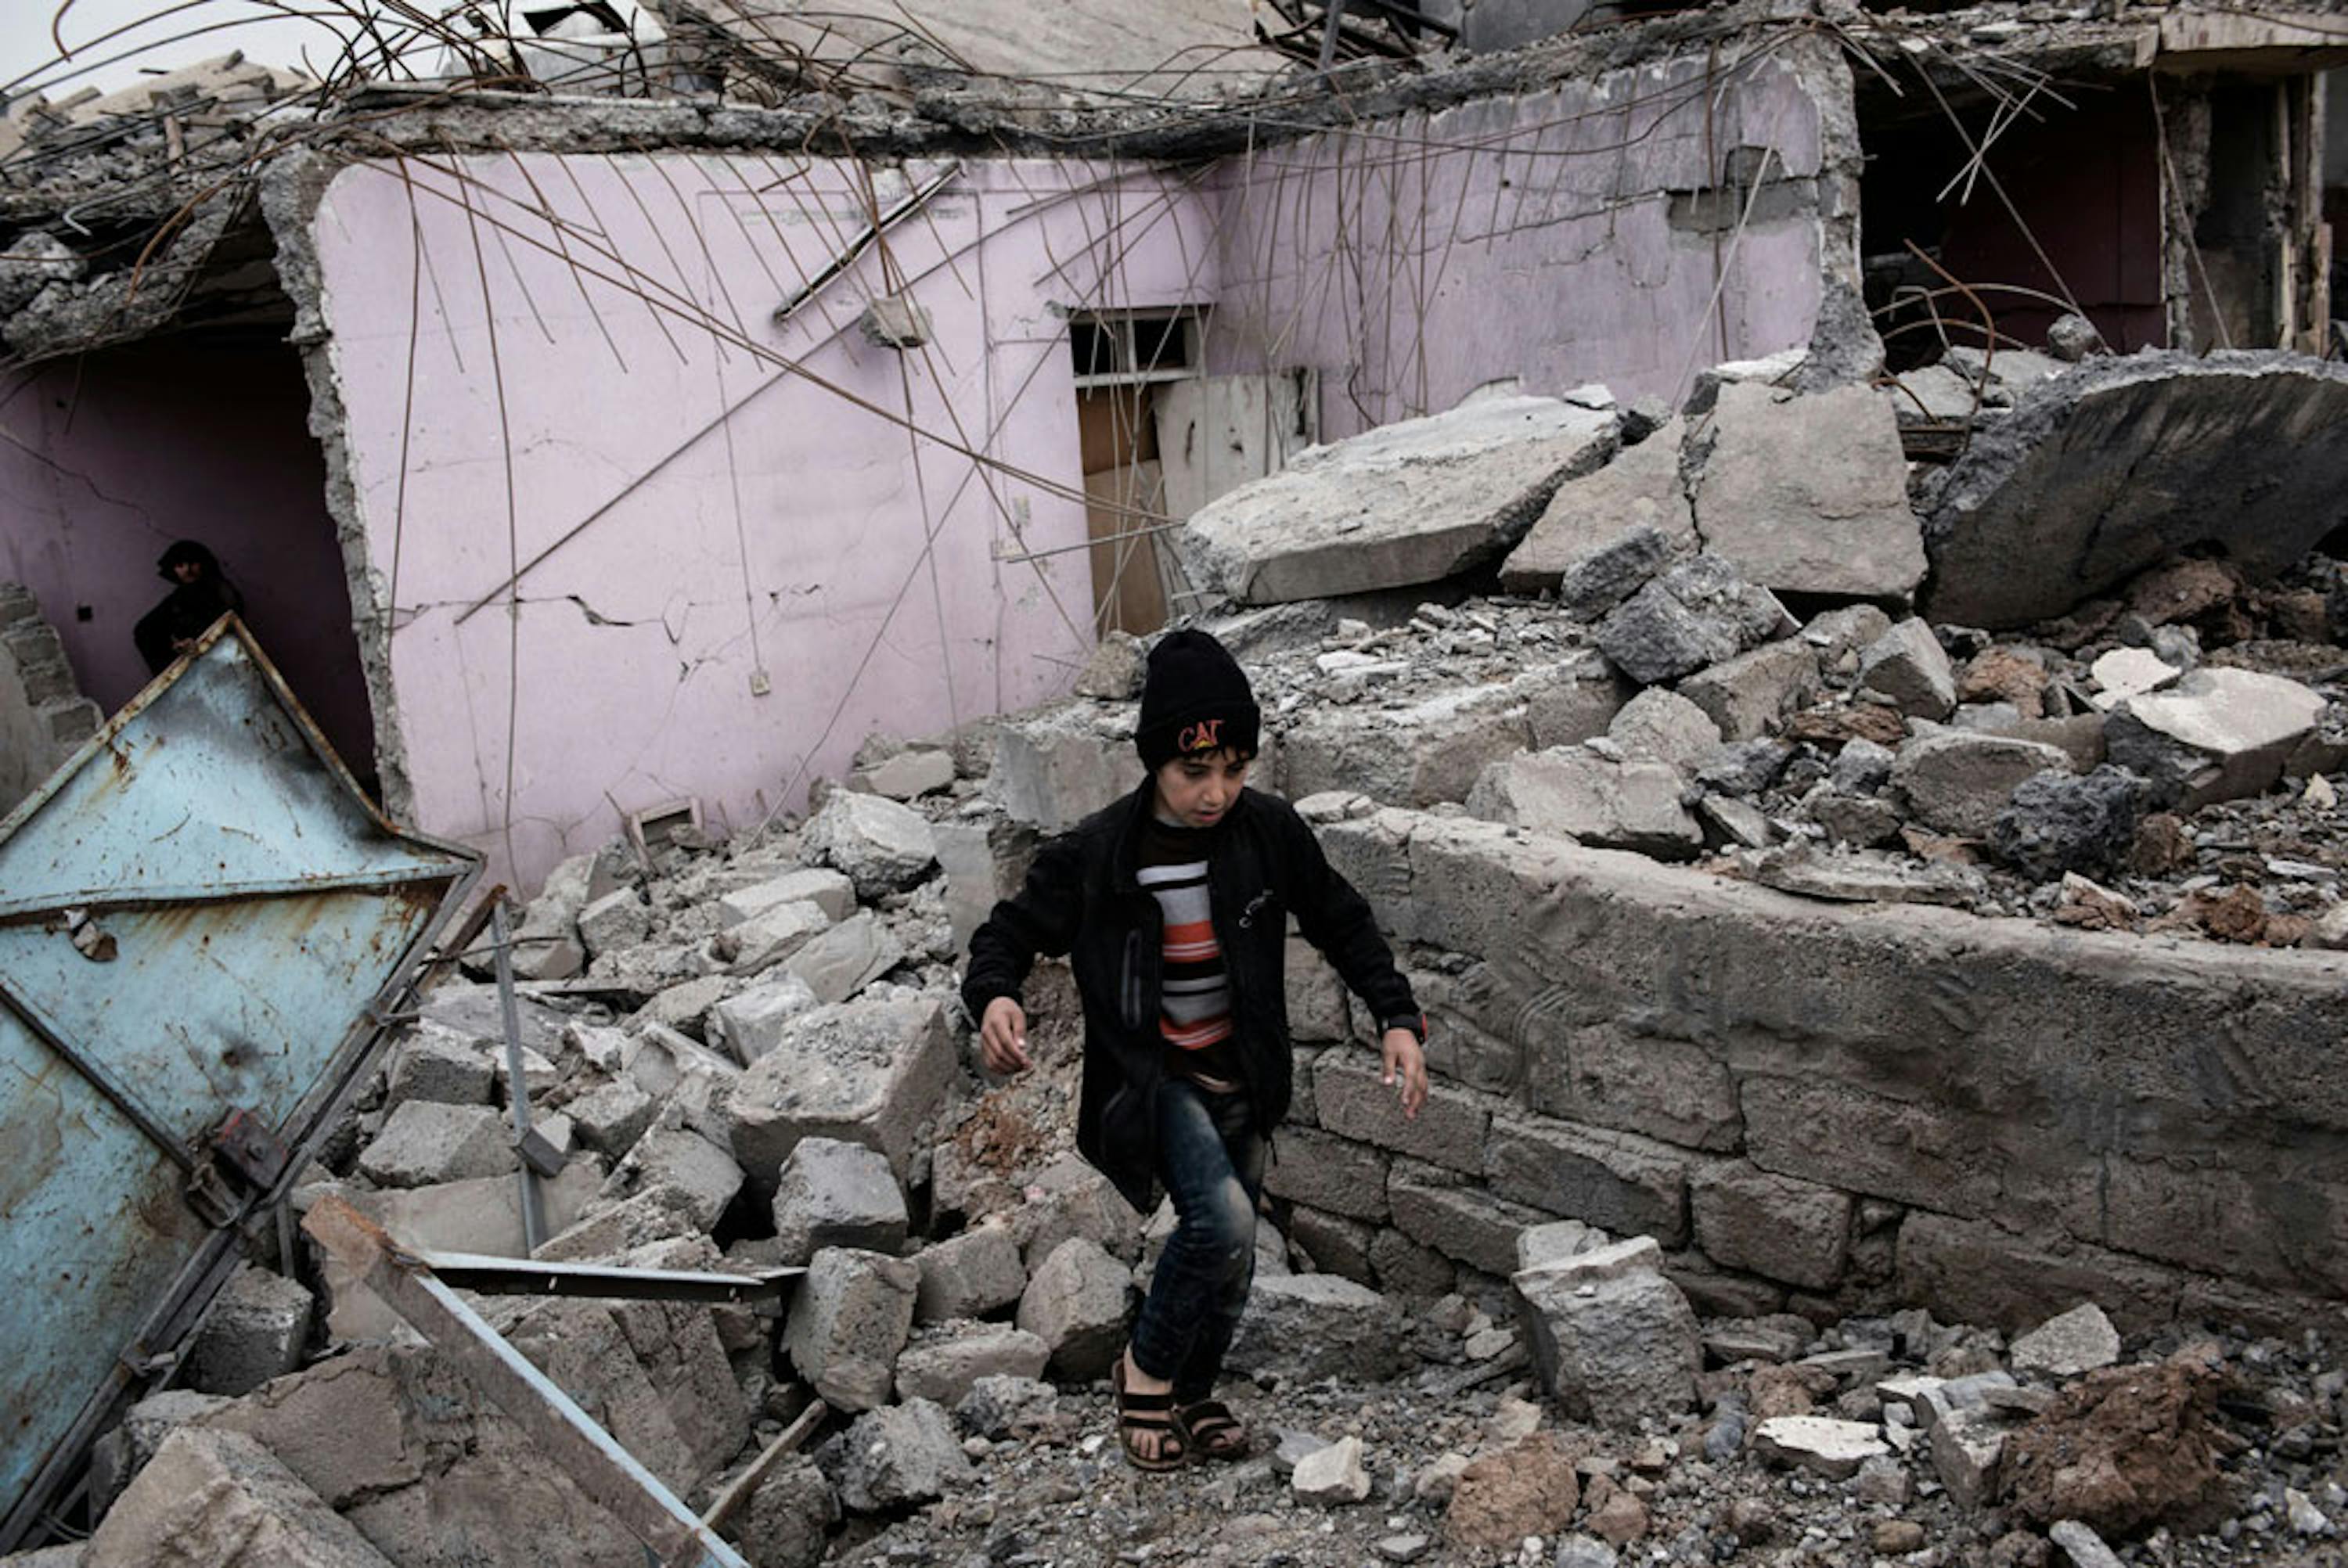 Un bambino fra le macerie di un edificio distrutto da un bombardamento aereo a Mosul Ovest, teatro di violentissimi combattimenti tra forze di sicurezza irachene e ISIS  - ©UNICEF/UN057866/Romenzi